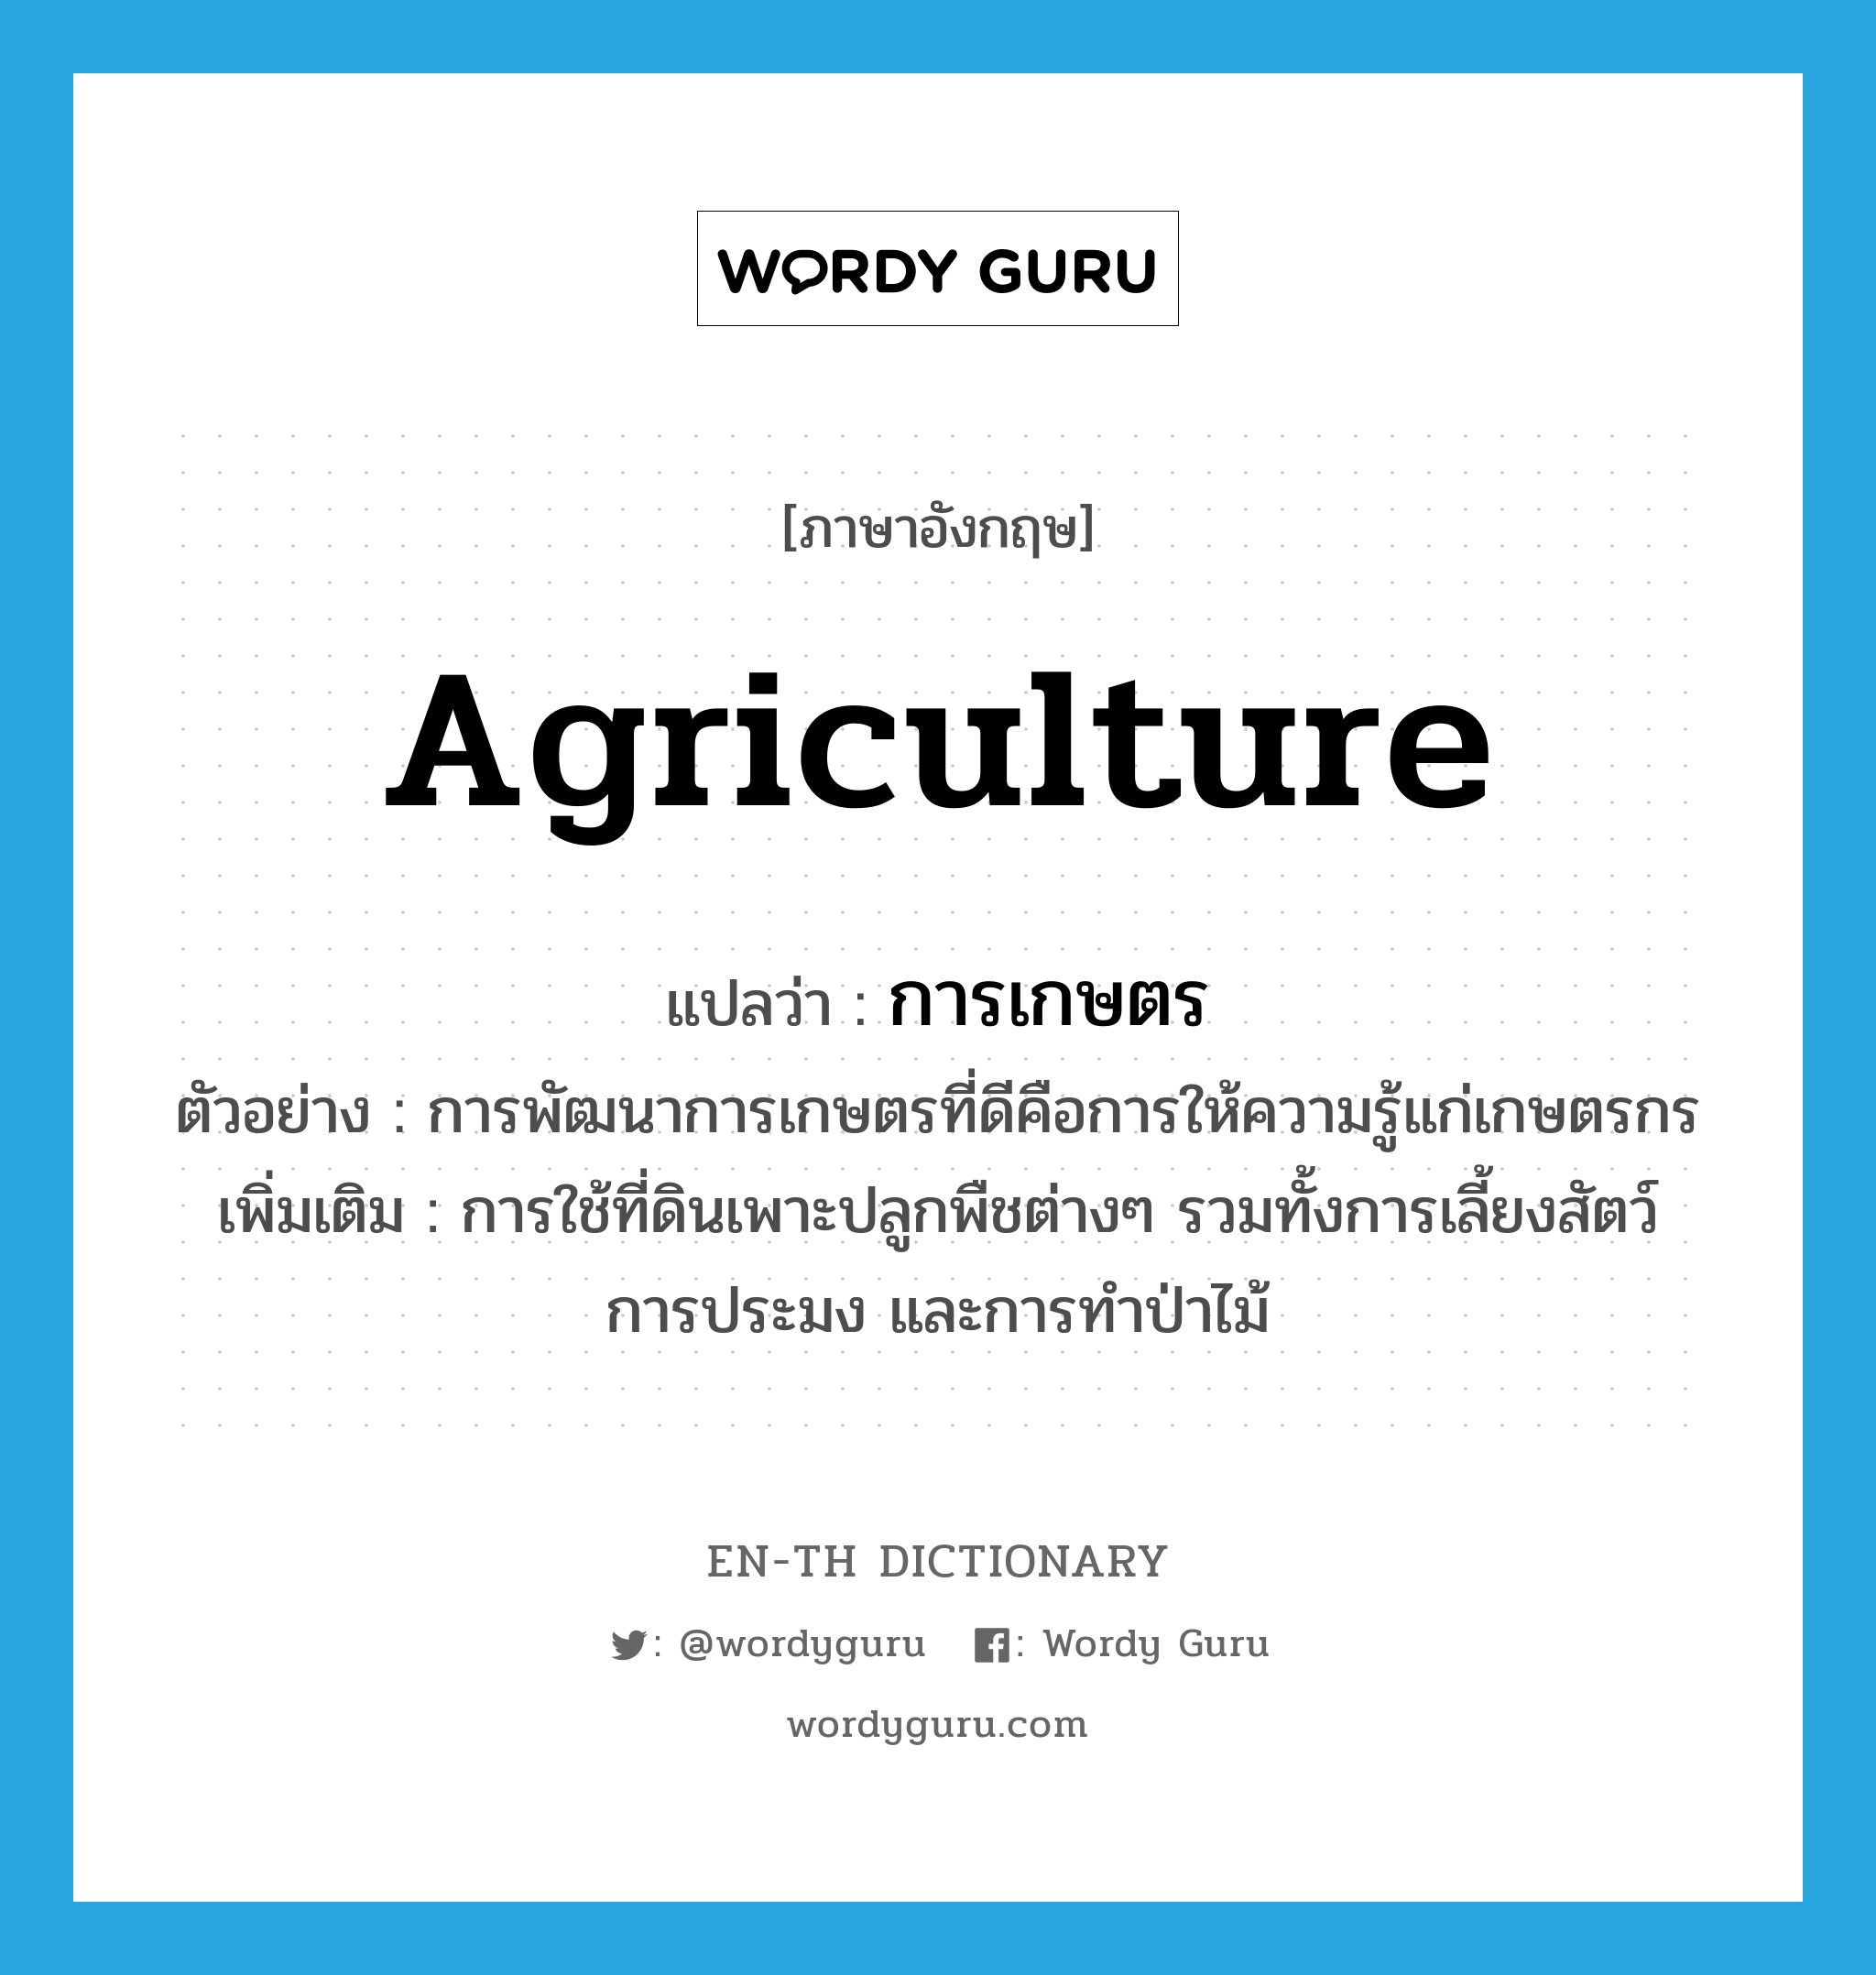 การเกษตร ภาษาอังกฤษ?, คำศัพท์ภาษาอังกฤษ การเกษตร แปลว่า agriculture ประเภท N ตัวอย่าง การพัฒนาการเกษตรที่ดีคือการให้ความรู้แก่เกษตรกร เพิ่มเติม การใช้ที่ดินเพาะปลูกพืชต่างๆ รวมทั้งการเลี้ยงสัตว์ การประมง และการทำป่าไม้ หมวด N